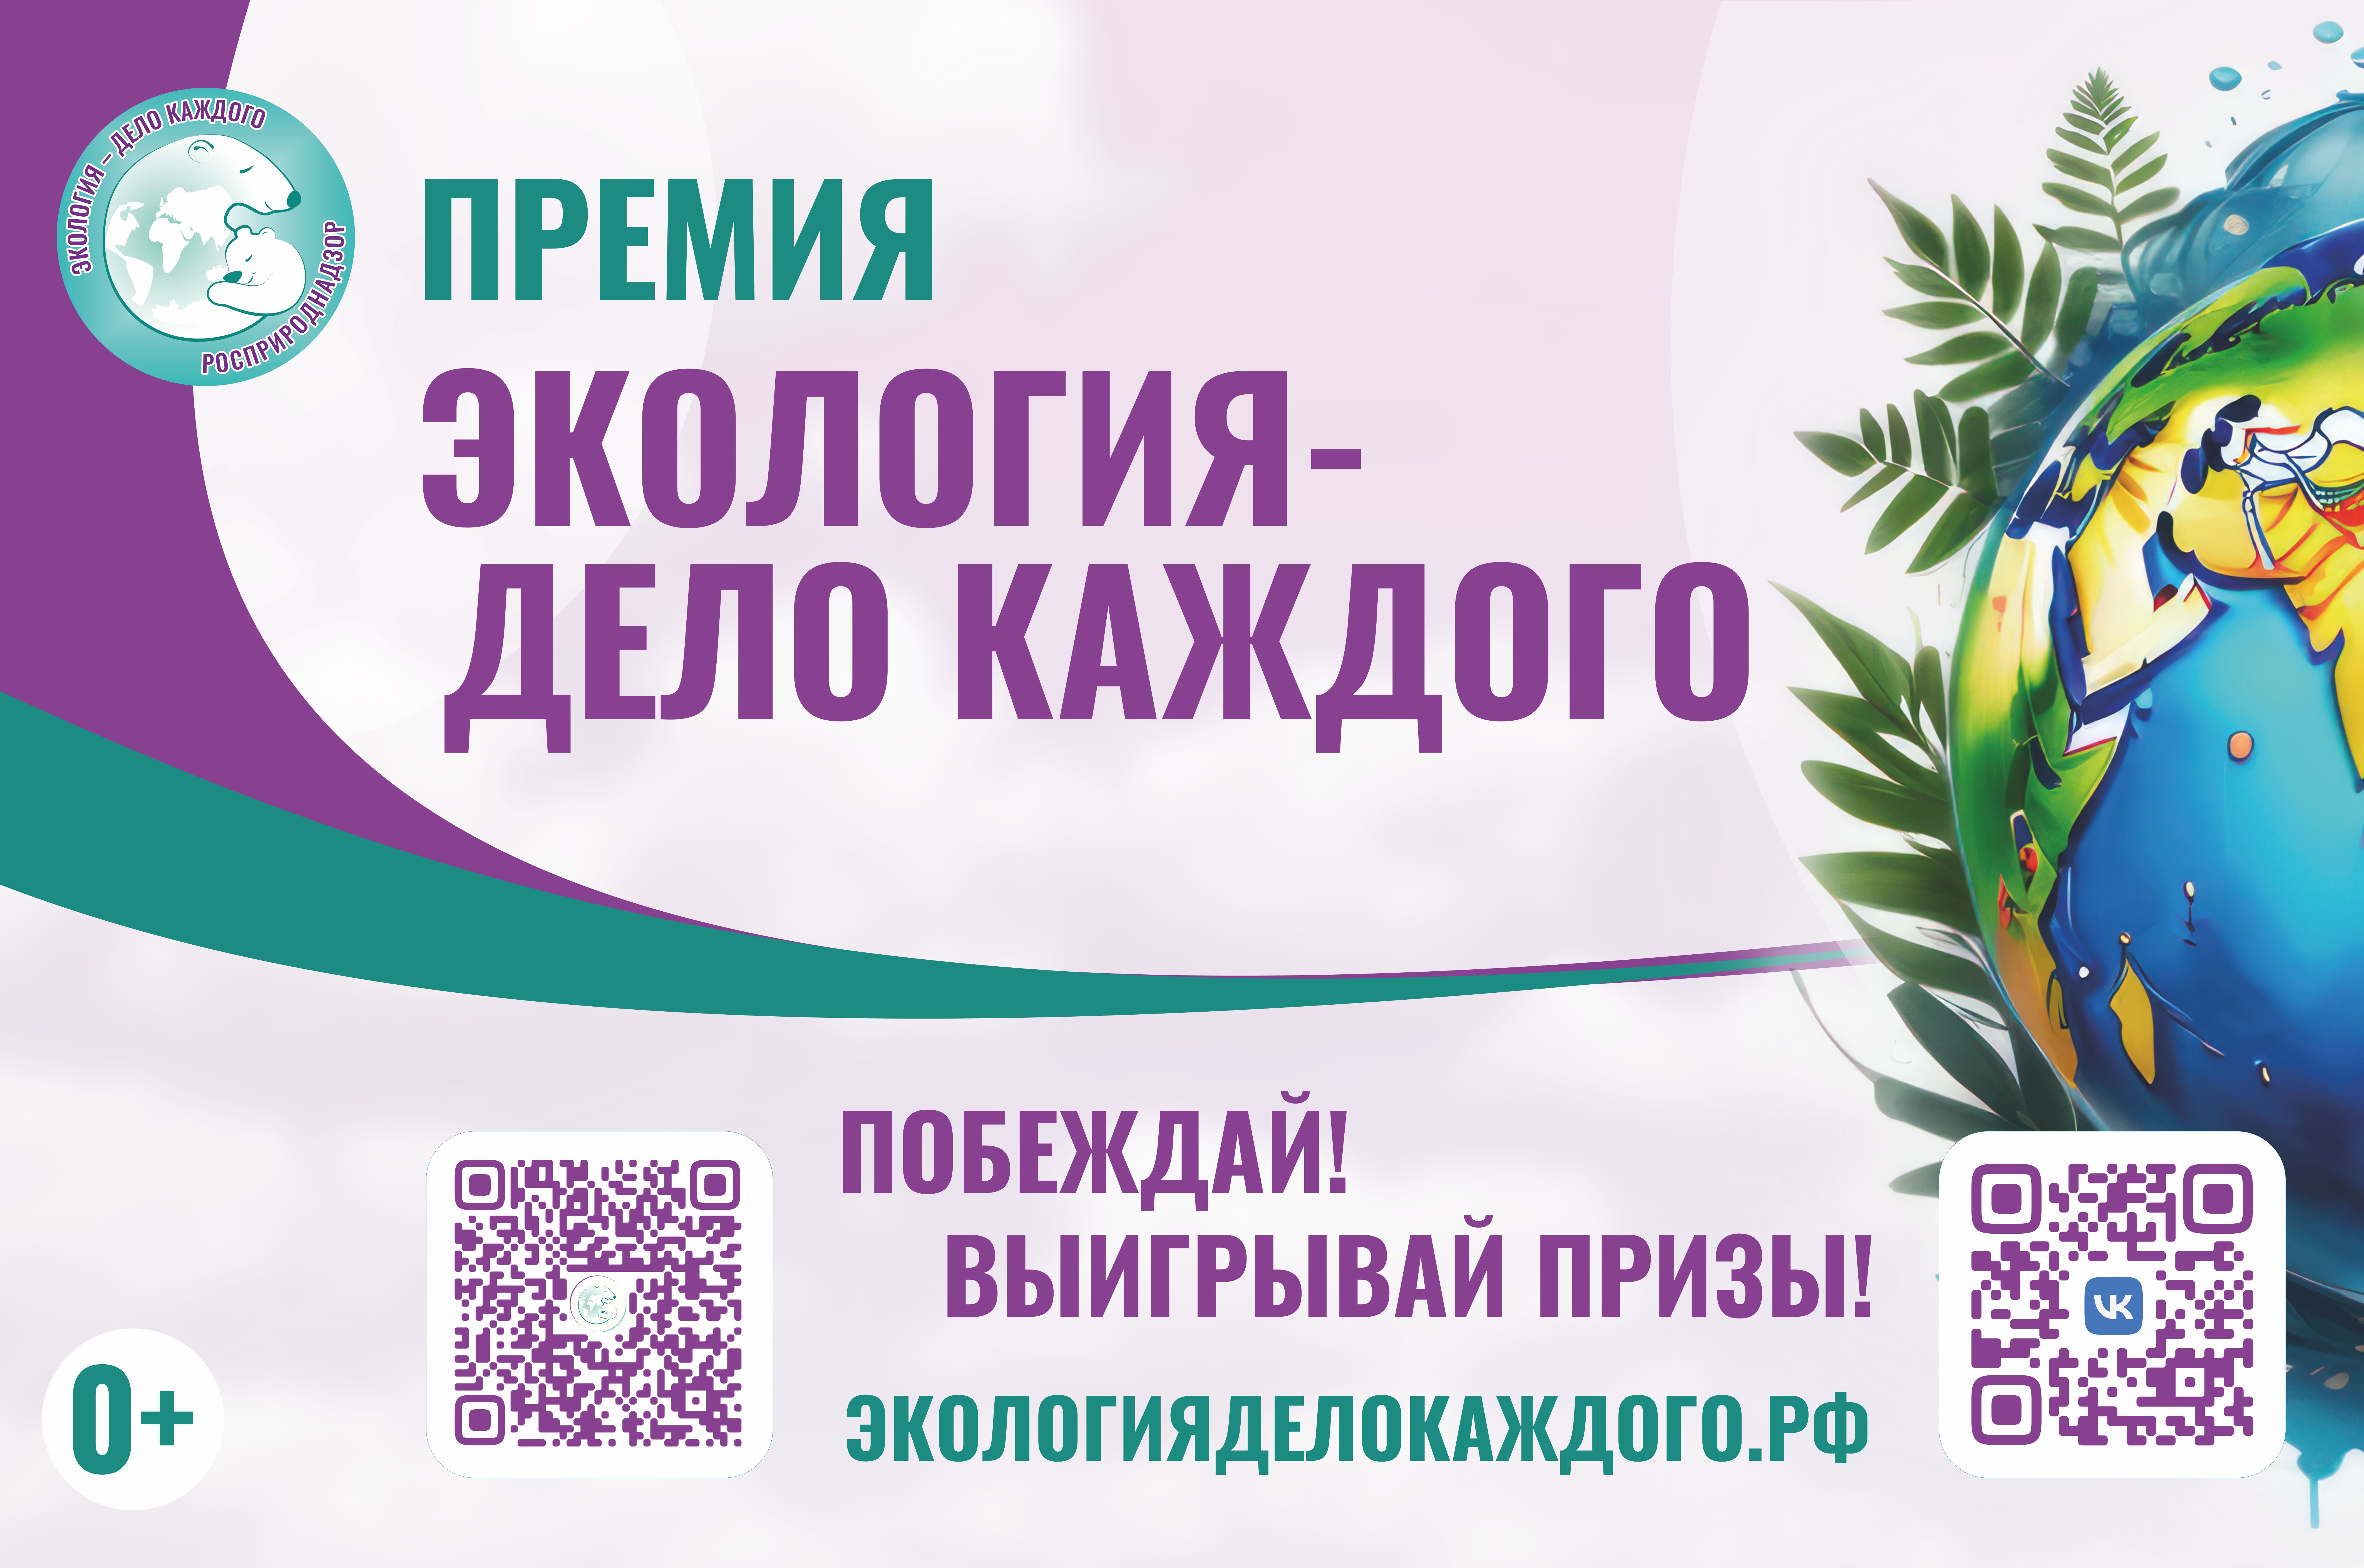 Северо-Кавказское межрегиональное управление Росприроднадзора предлагает  принять участие в продвижении четвертого сезона Международной детско-юношеской премии «Экология - дело каждого».